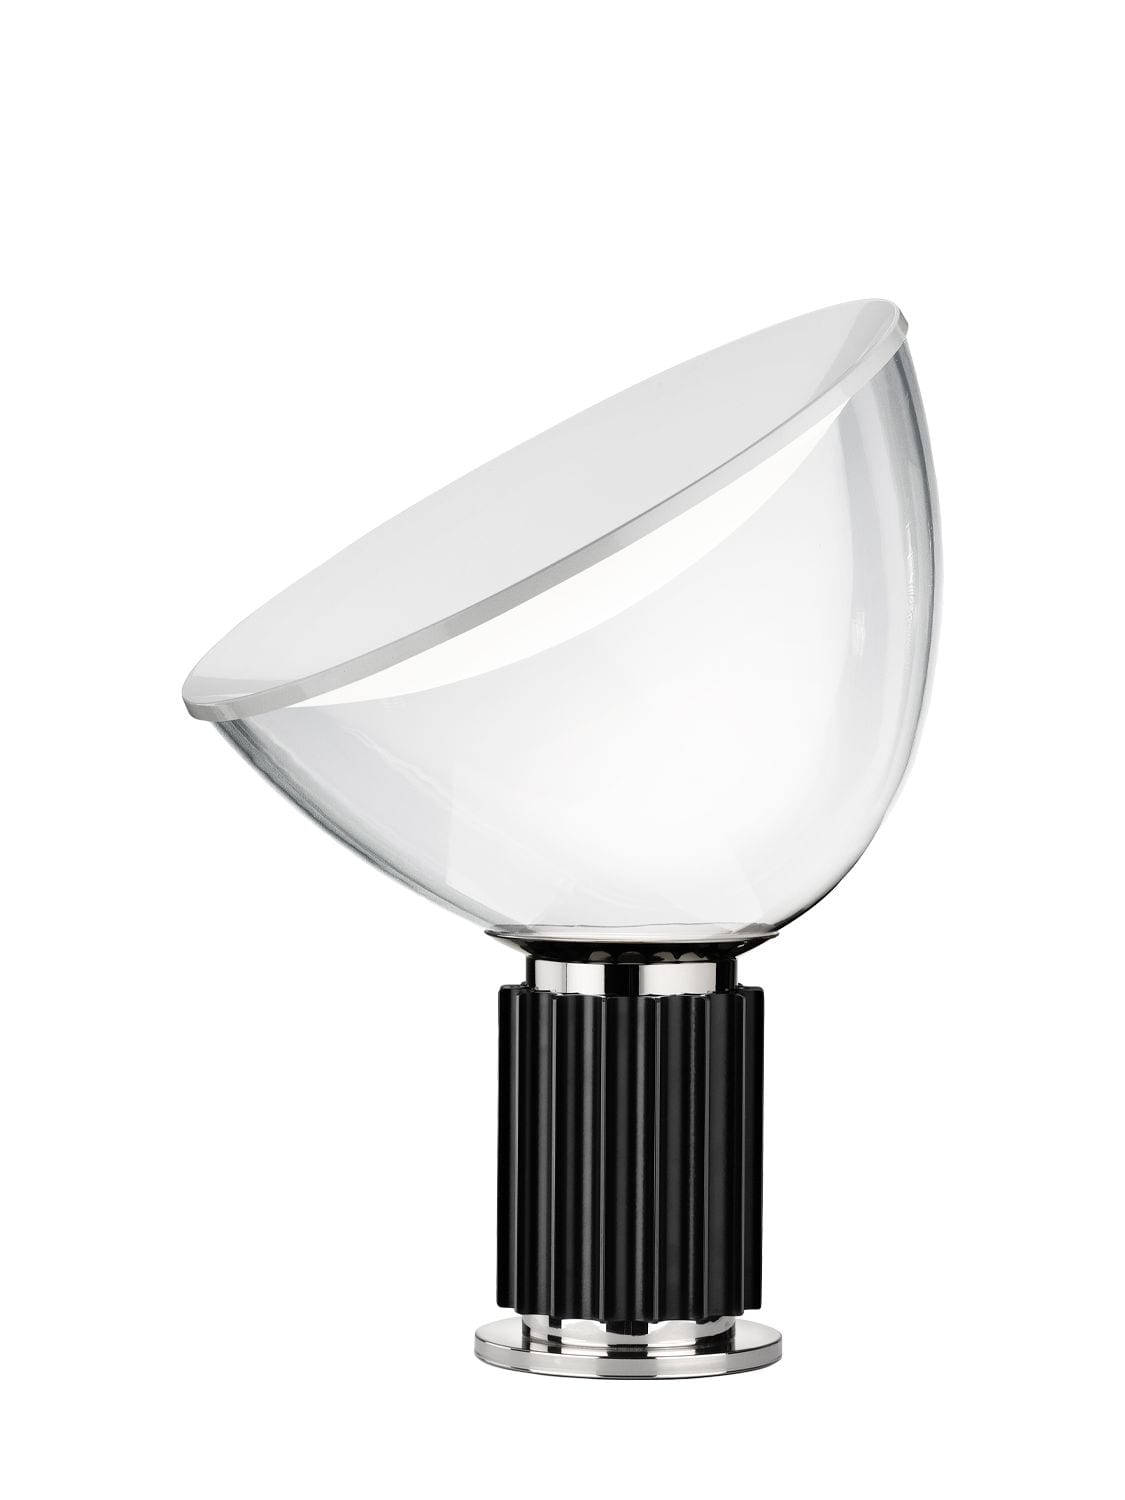 Image of Taccia Small Led Table Lamp